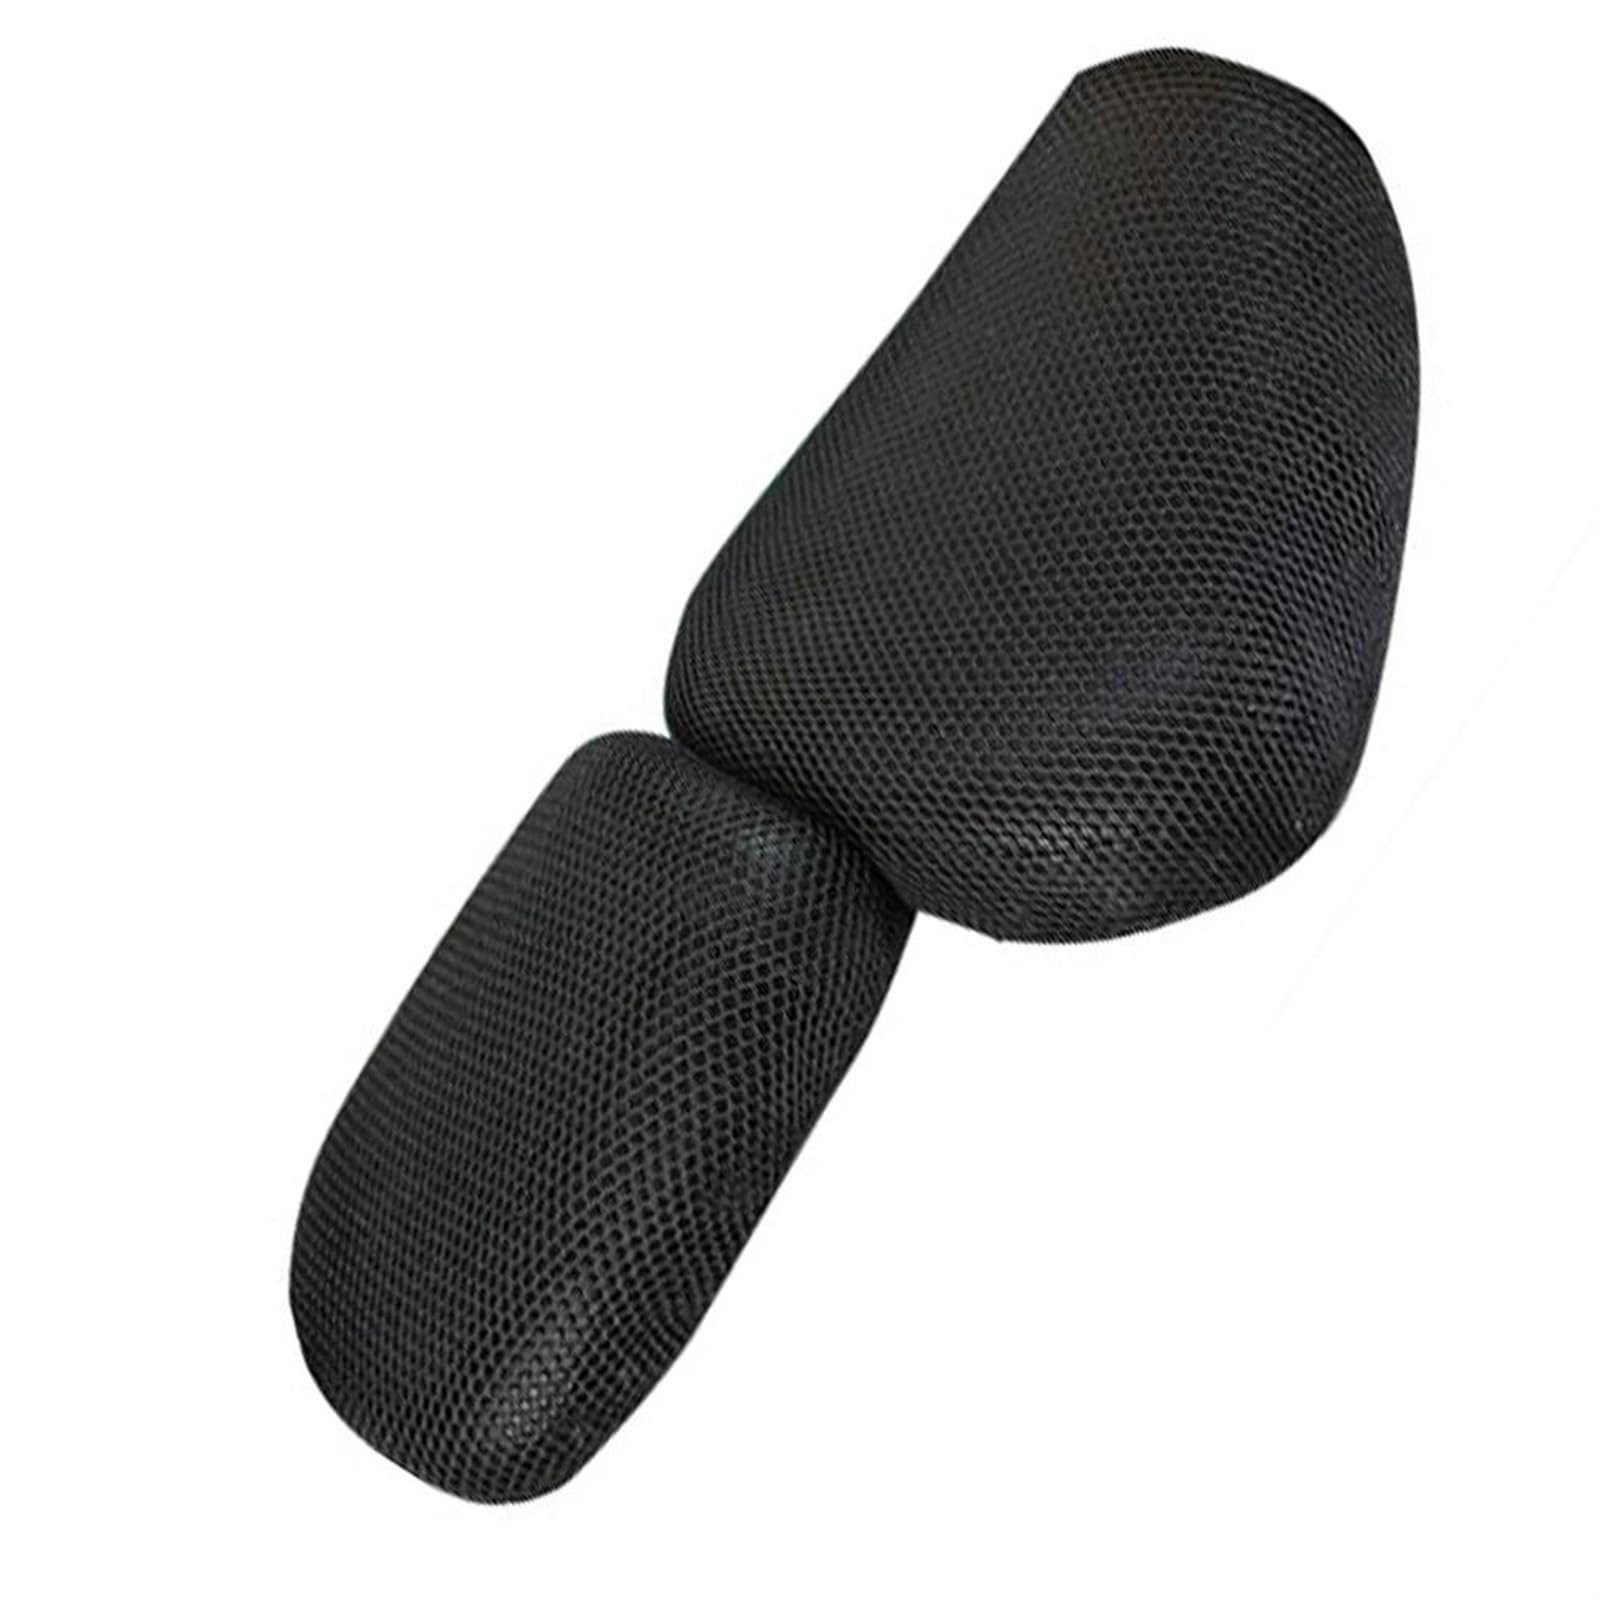 HTRHHNF Motorrad Atmungsaktive Sitzkissen Abdeckung Protector Schutz 3D Sonnenschutz Mesh Pad Schutz Für Hyosung Aquila GV250 von HTRHHNF